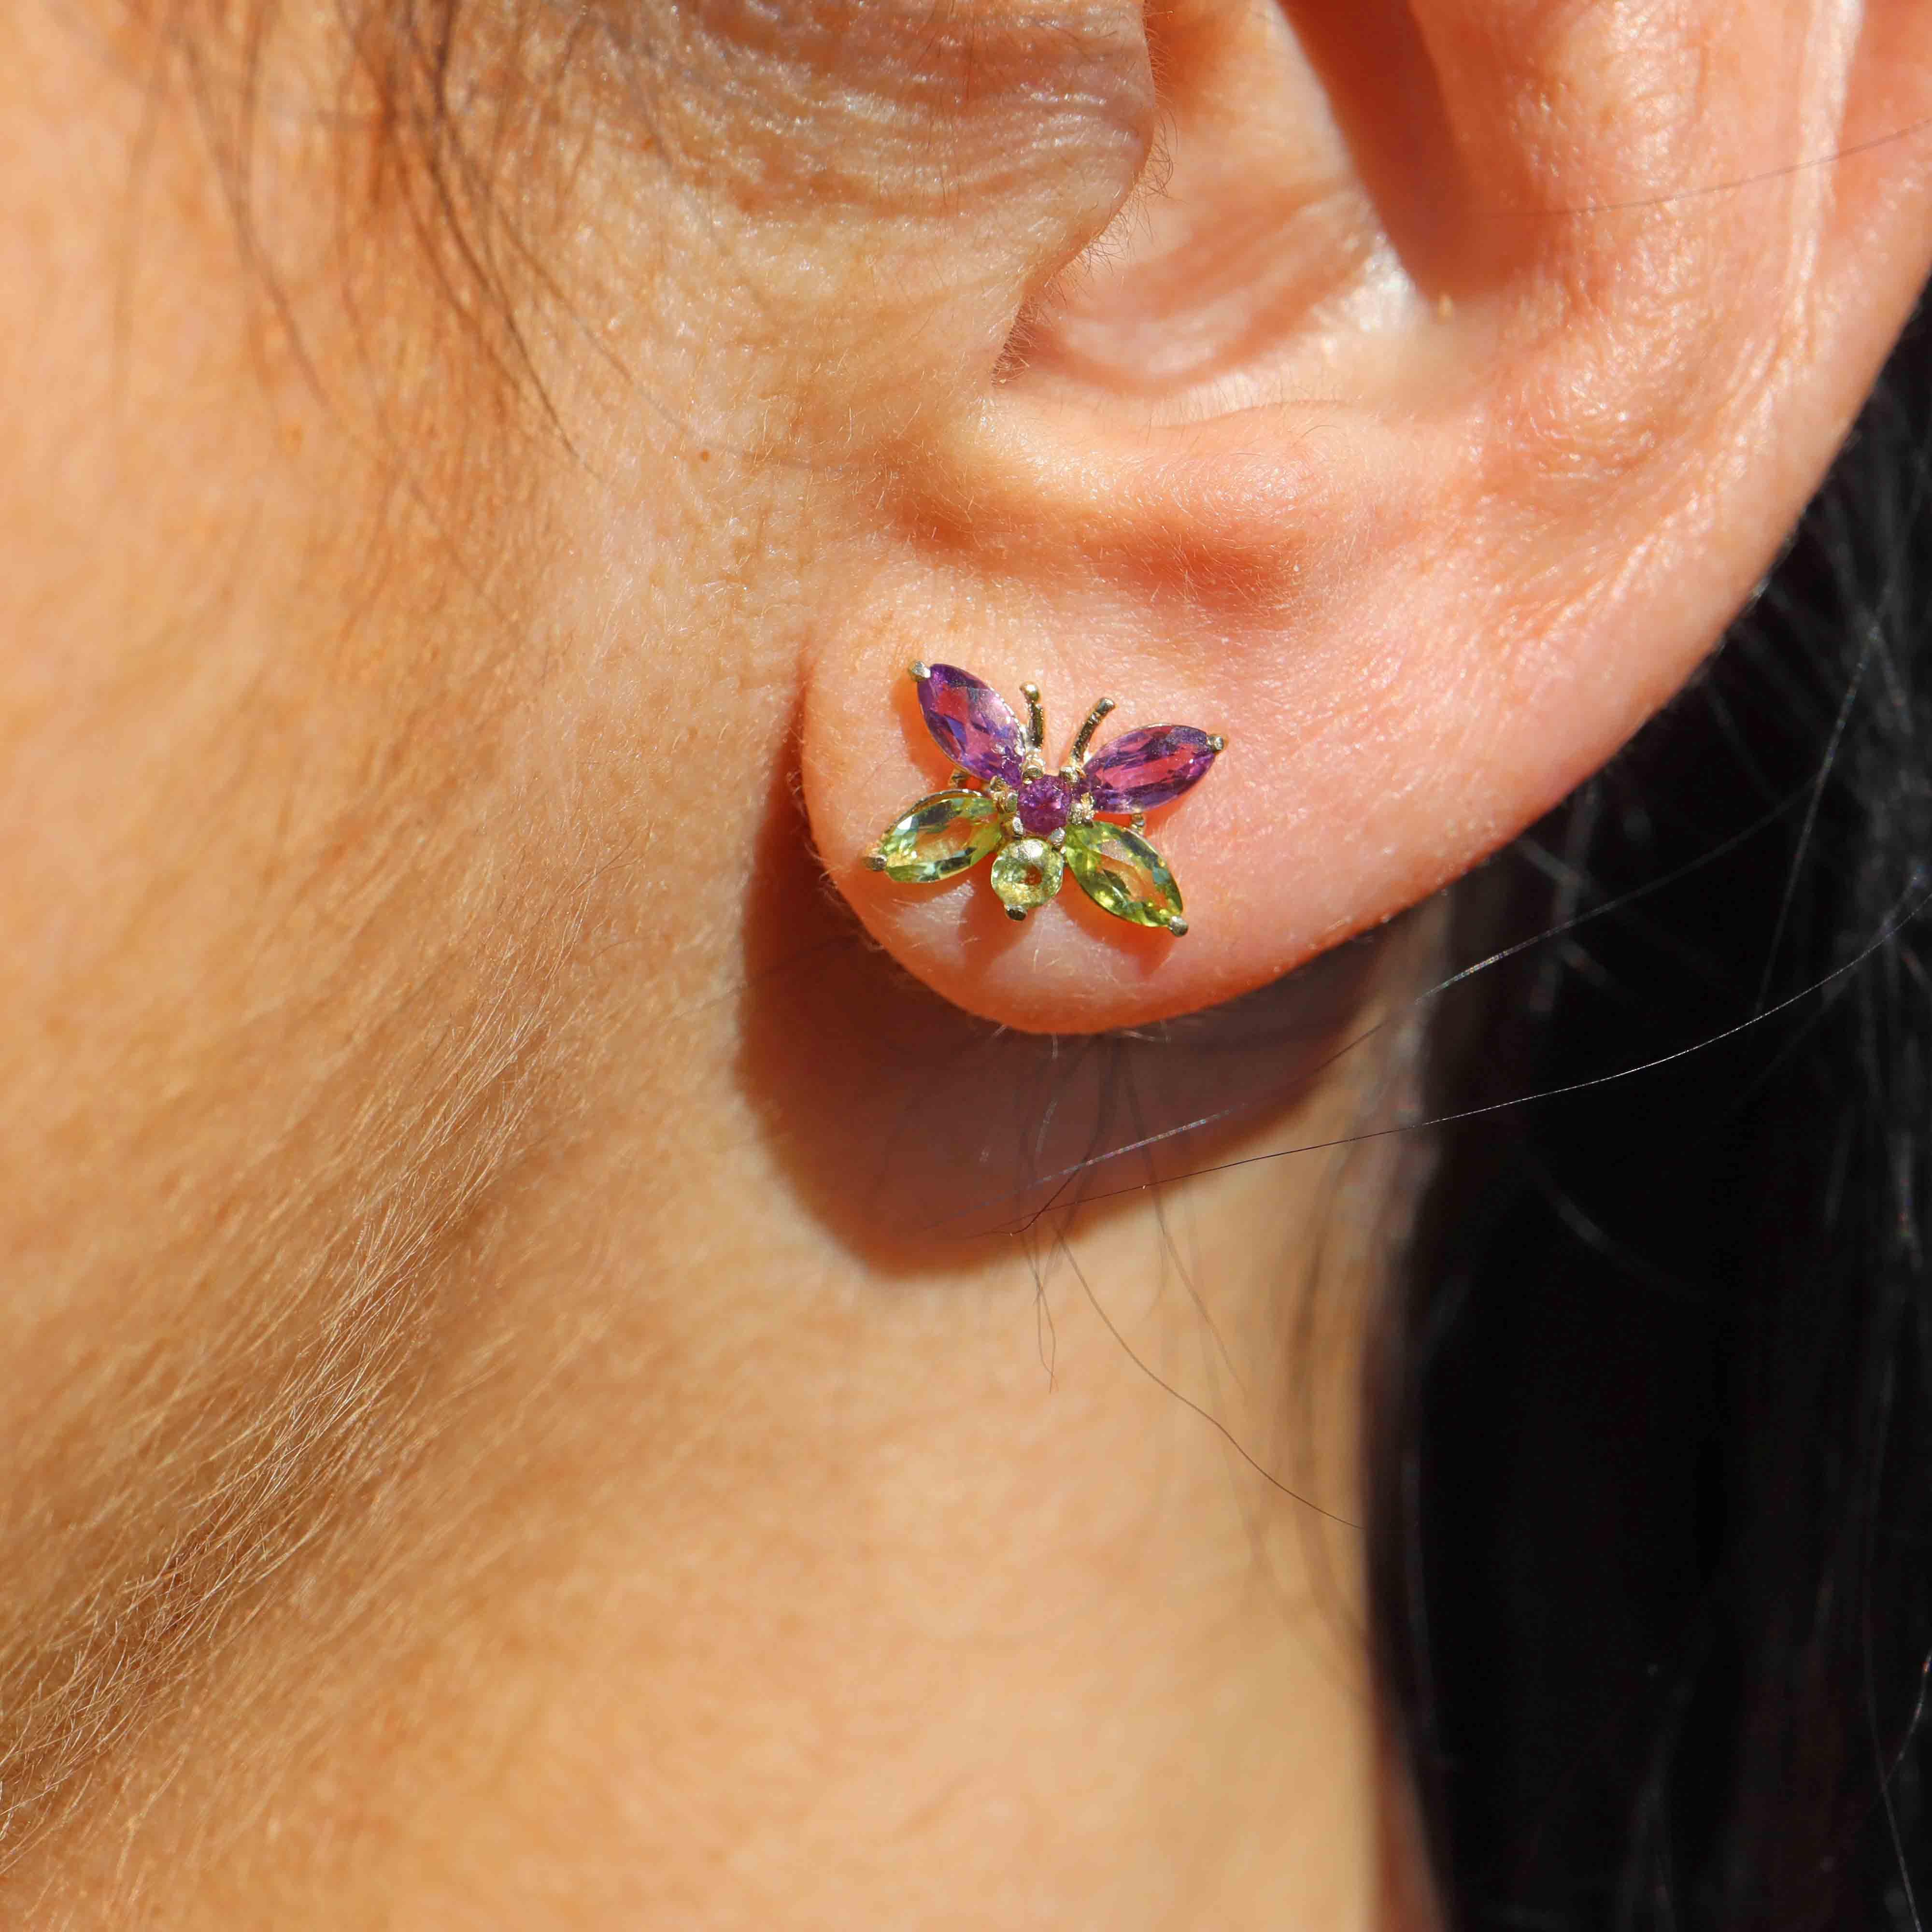 Ellibelle Jewellery Amethyst & Peridot 9ct Gold Butterfly Stud Earrings